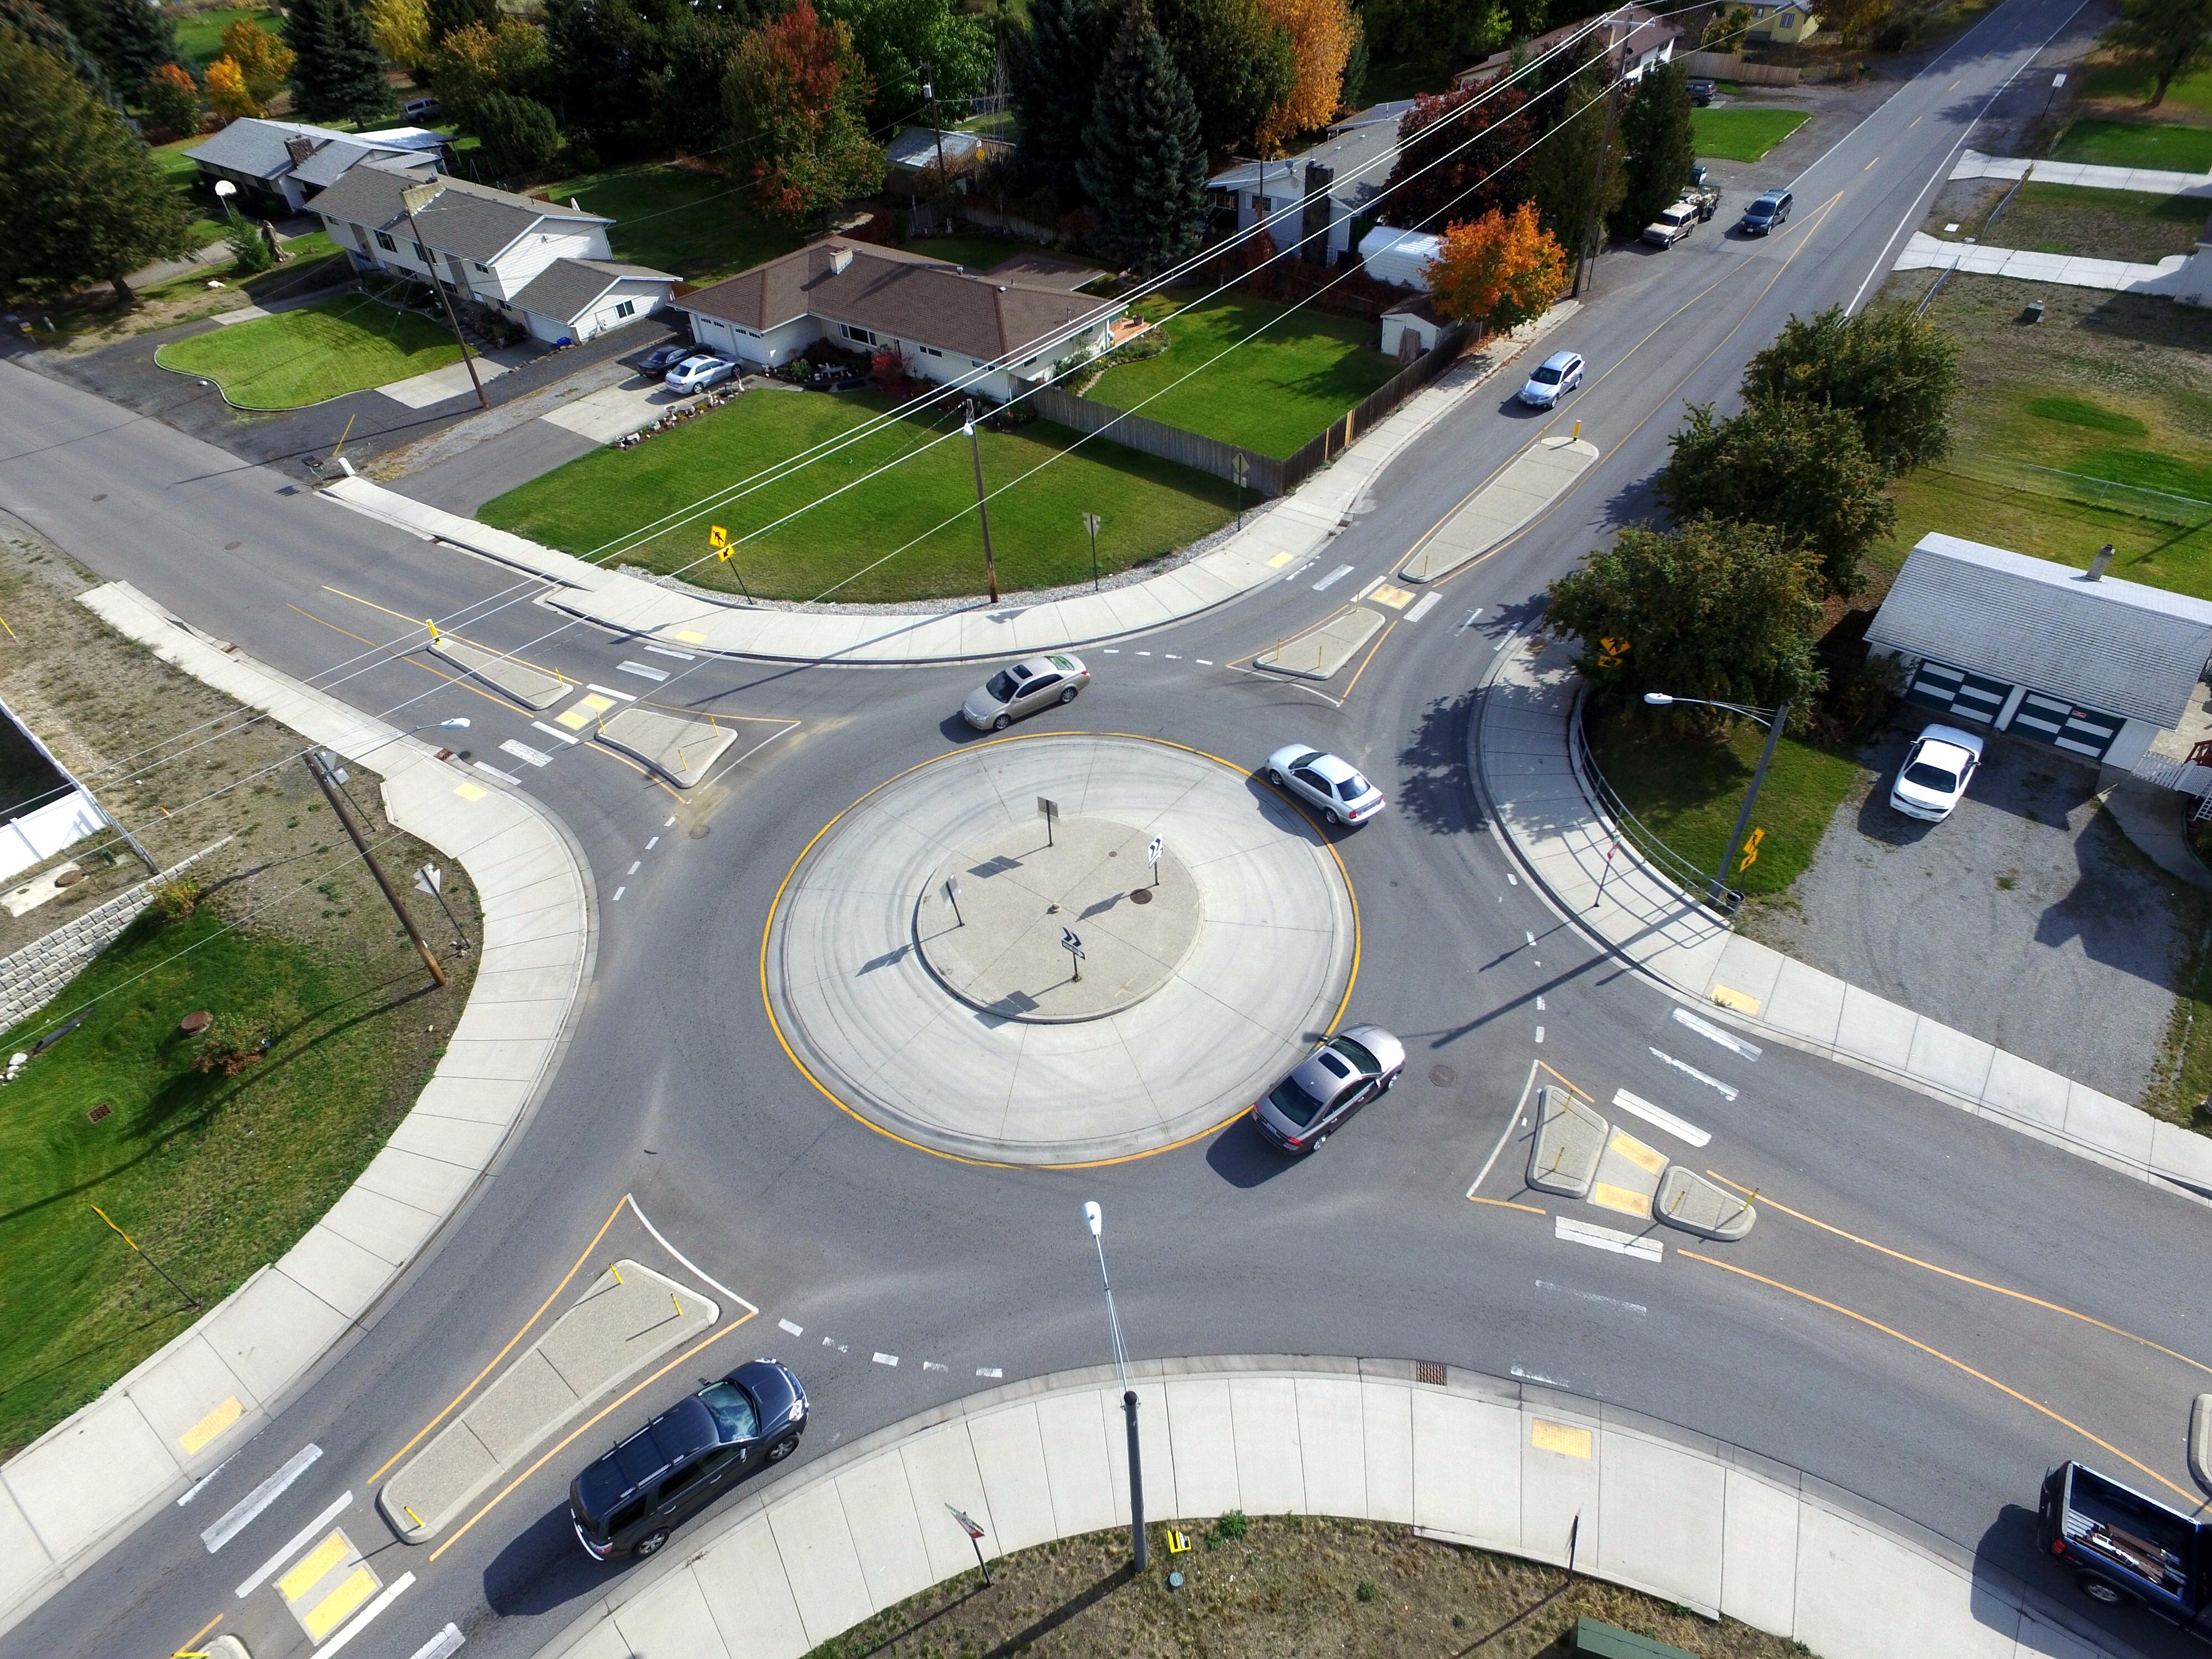 Кольцевой чита. Roundabout кольцевой перекрёсток. Волшебная Кольцевая развязка (Magic Roundabout), Суиндон, Англия. Суиндон перекресток. The Magic Roundabout развязка.